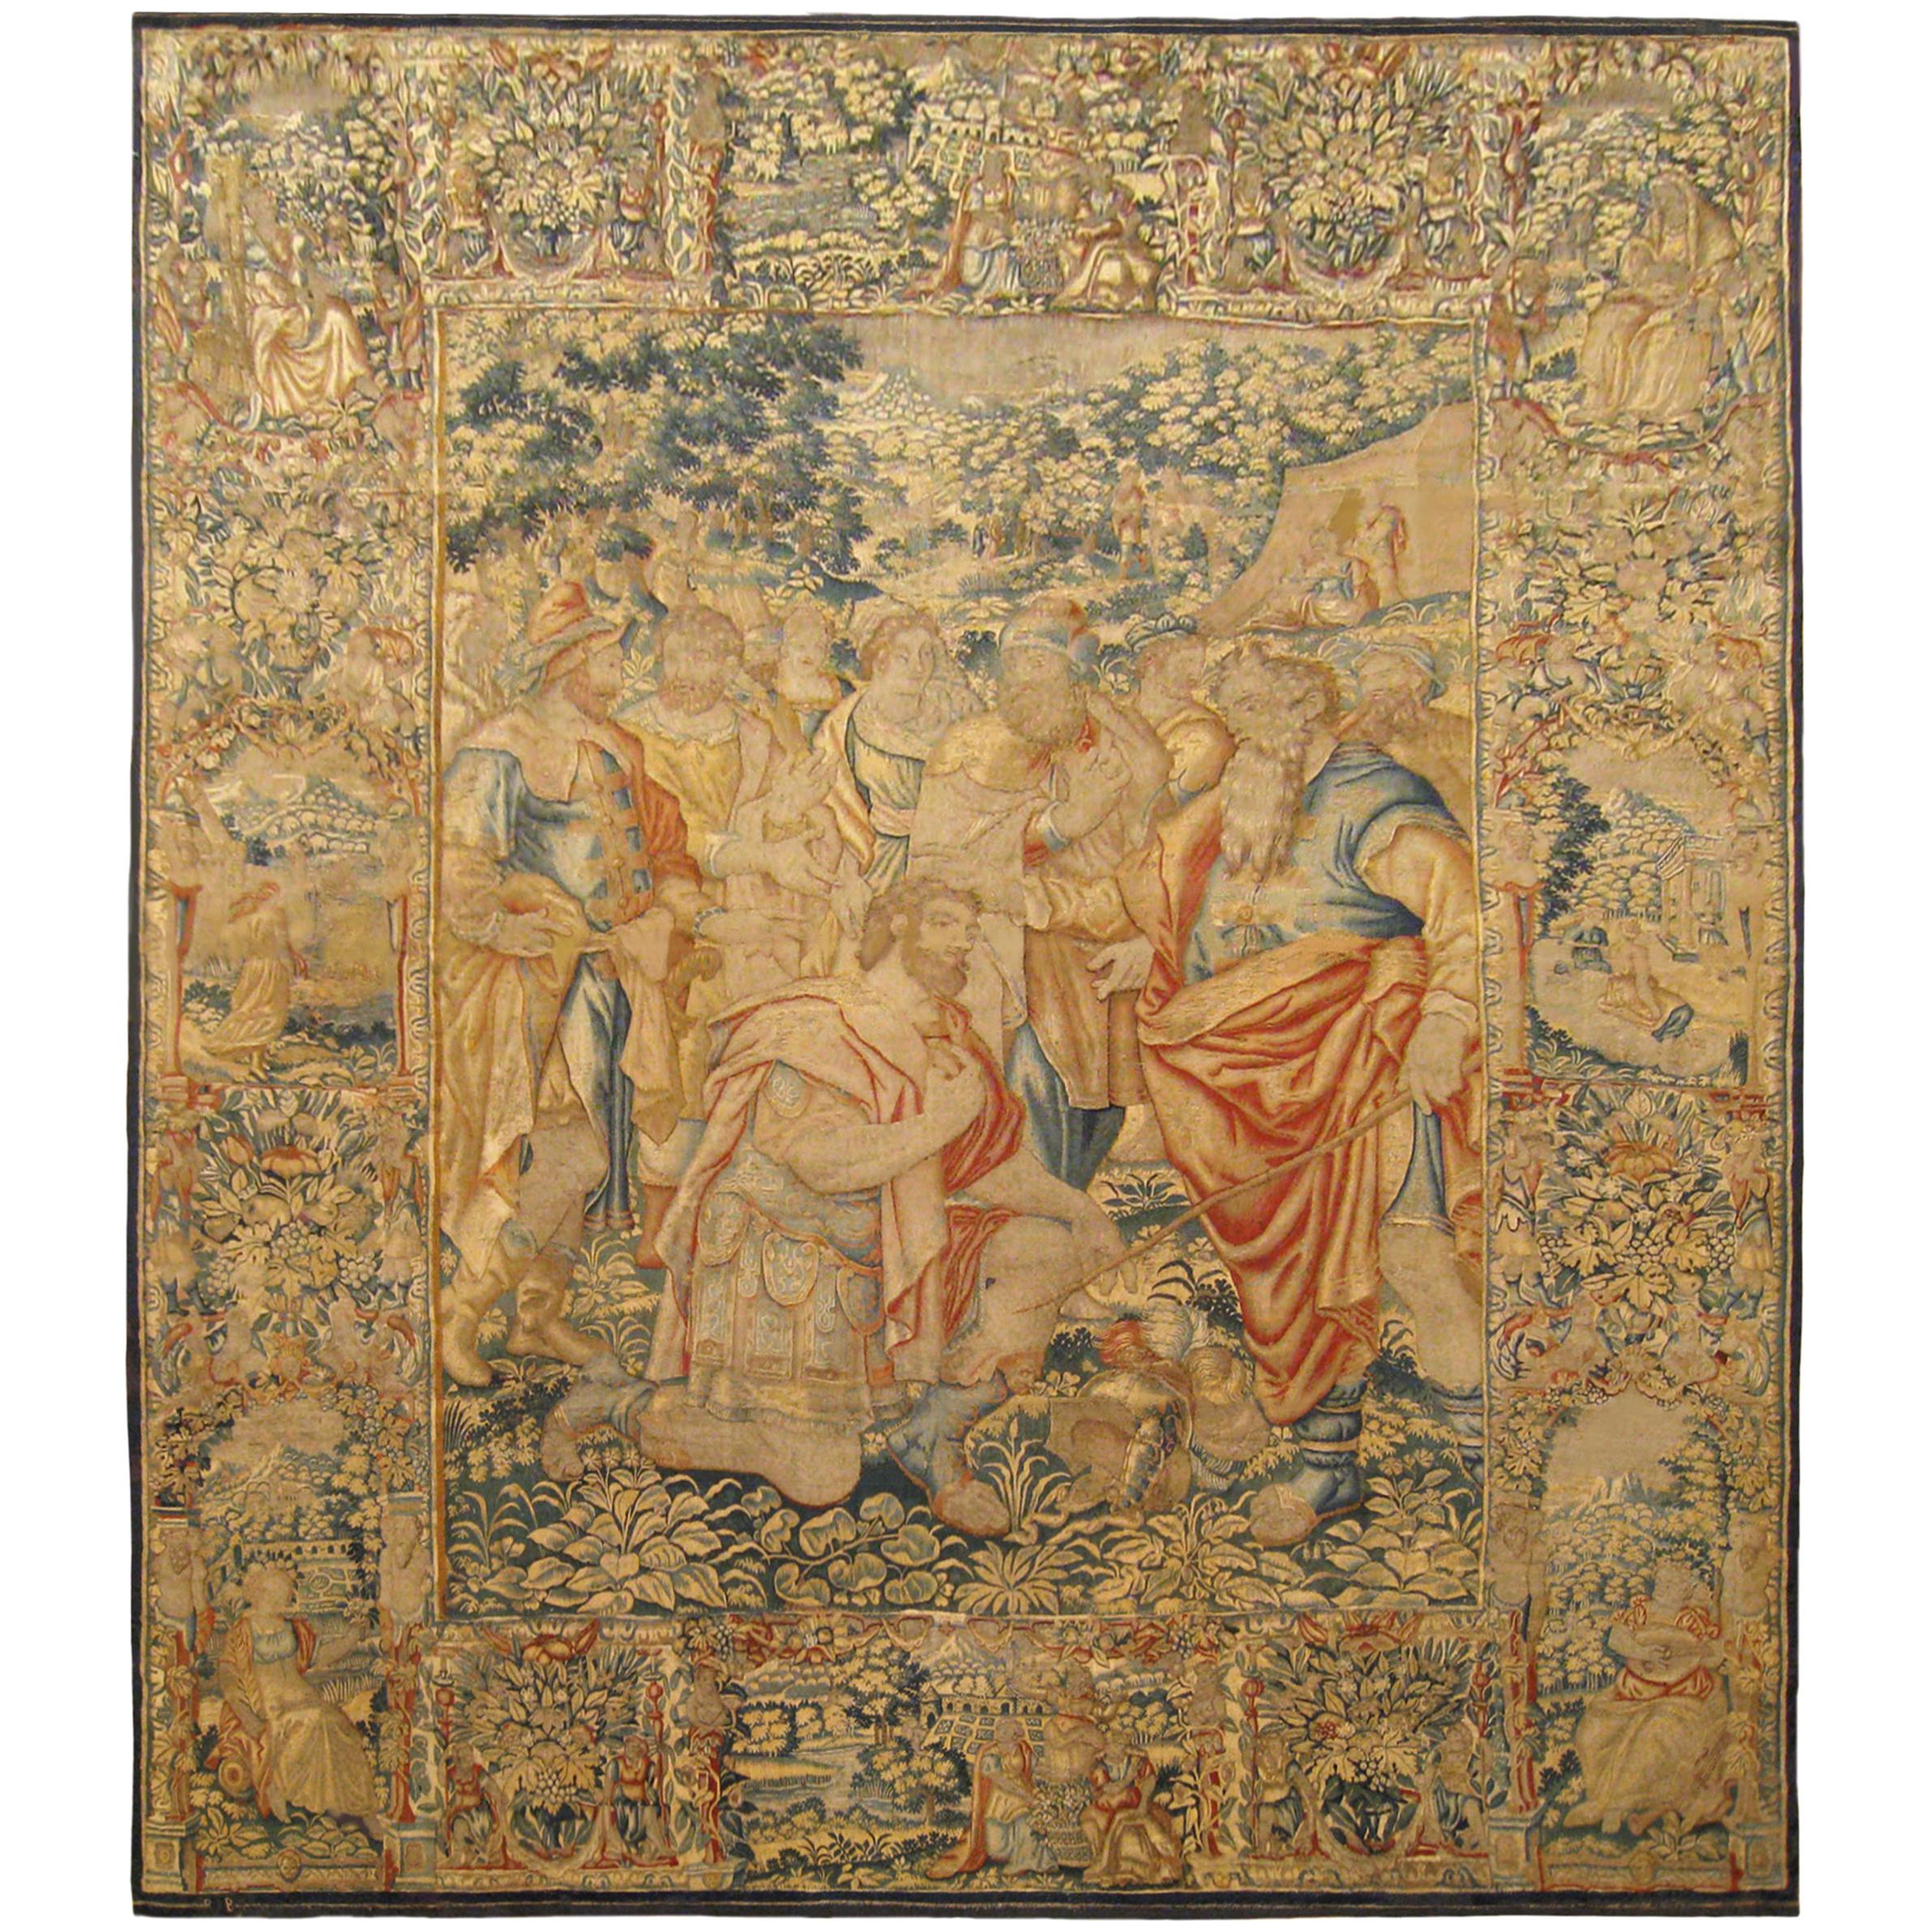 Tapisserie biblique de Bruxelles du 16e siècle, avec Moïse et Joshua